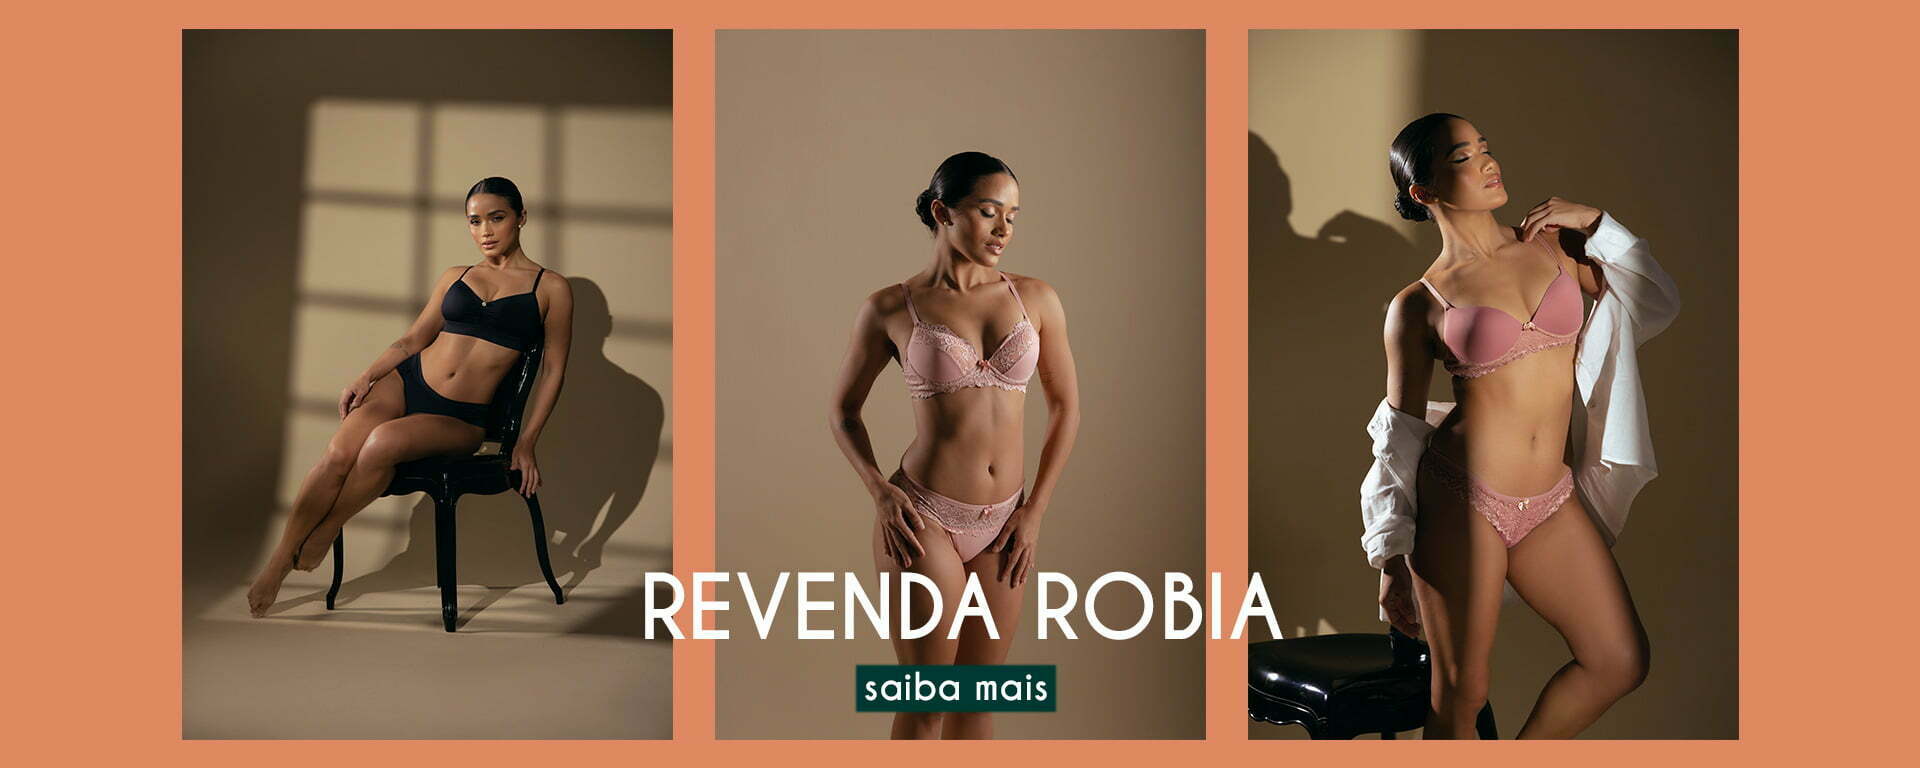 (c) Robia.com.br